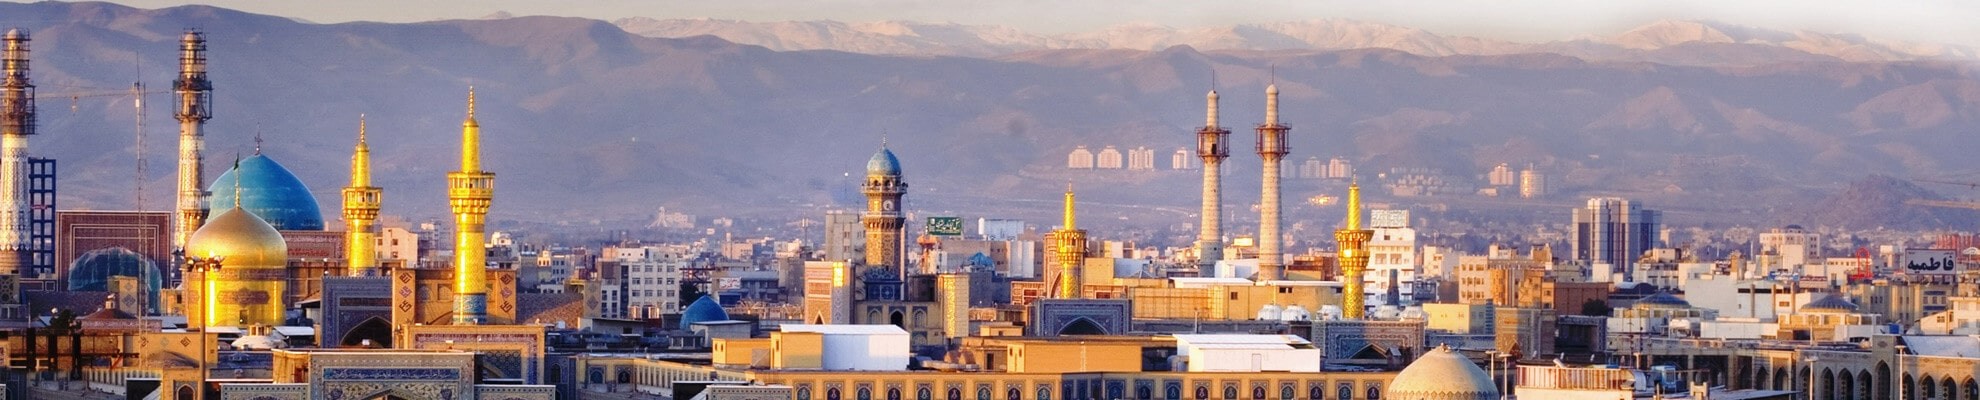 تور شاهین شهر به مشهد - ارزان قیمت، هوایی و زمینی